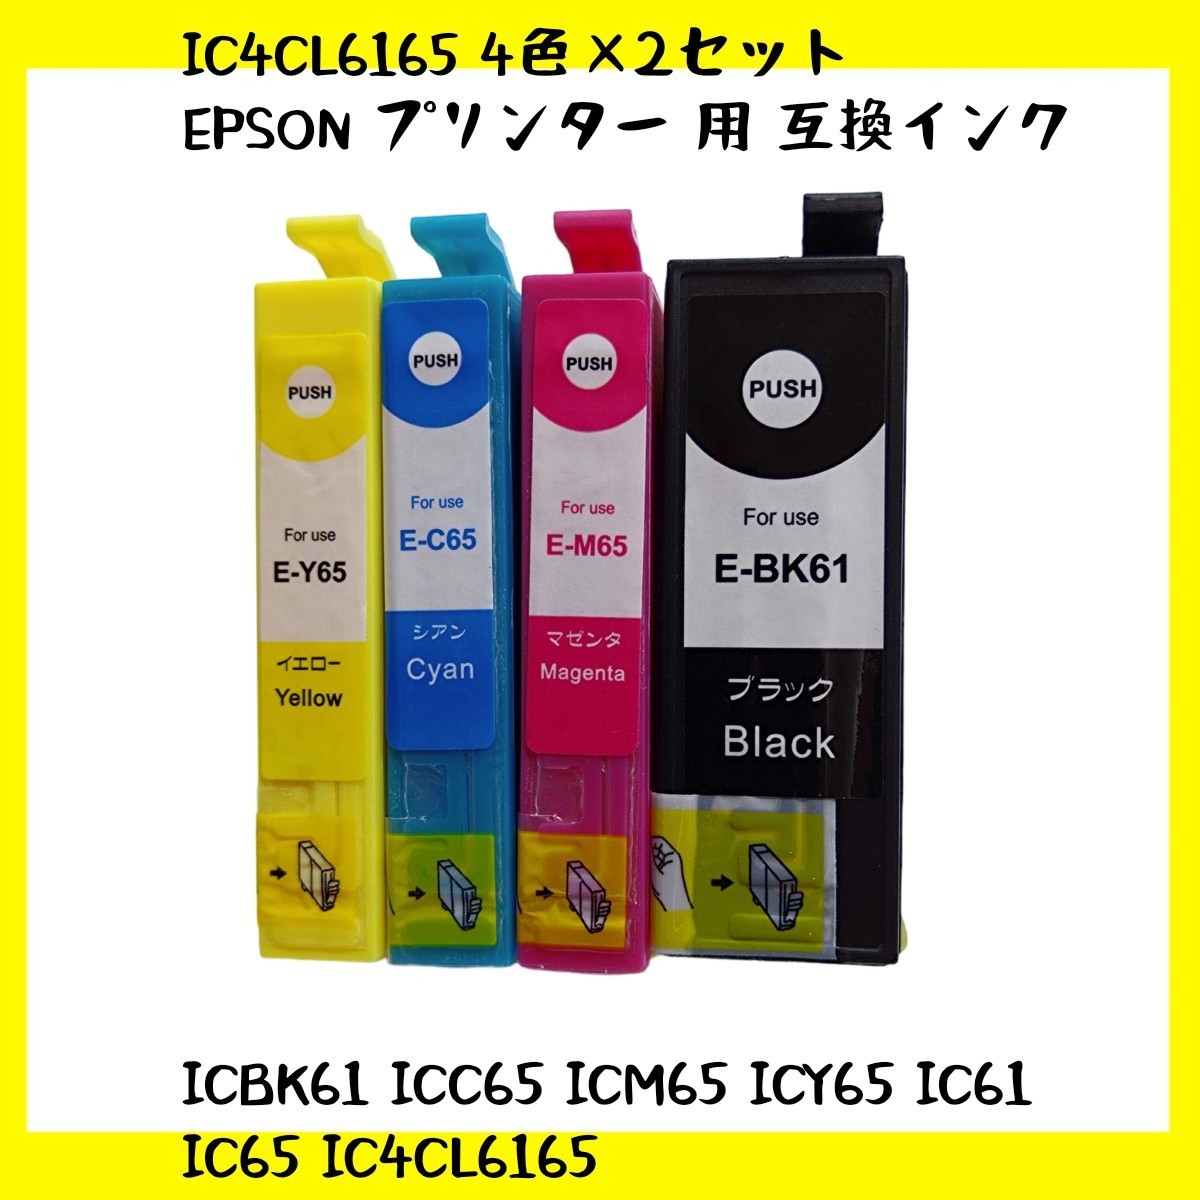 【未使用】IC4CL6165 4色×2セット EPSON エプソン プリンター 用 互換インク ICチップ付 残量表示機能付 ICBK61 ICC65 ICM65 ICY65 no.3の画像1